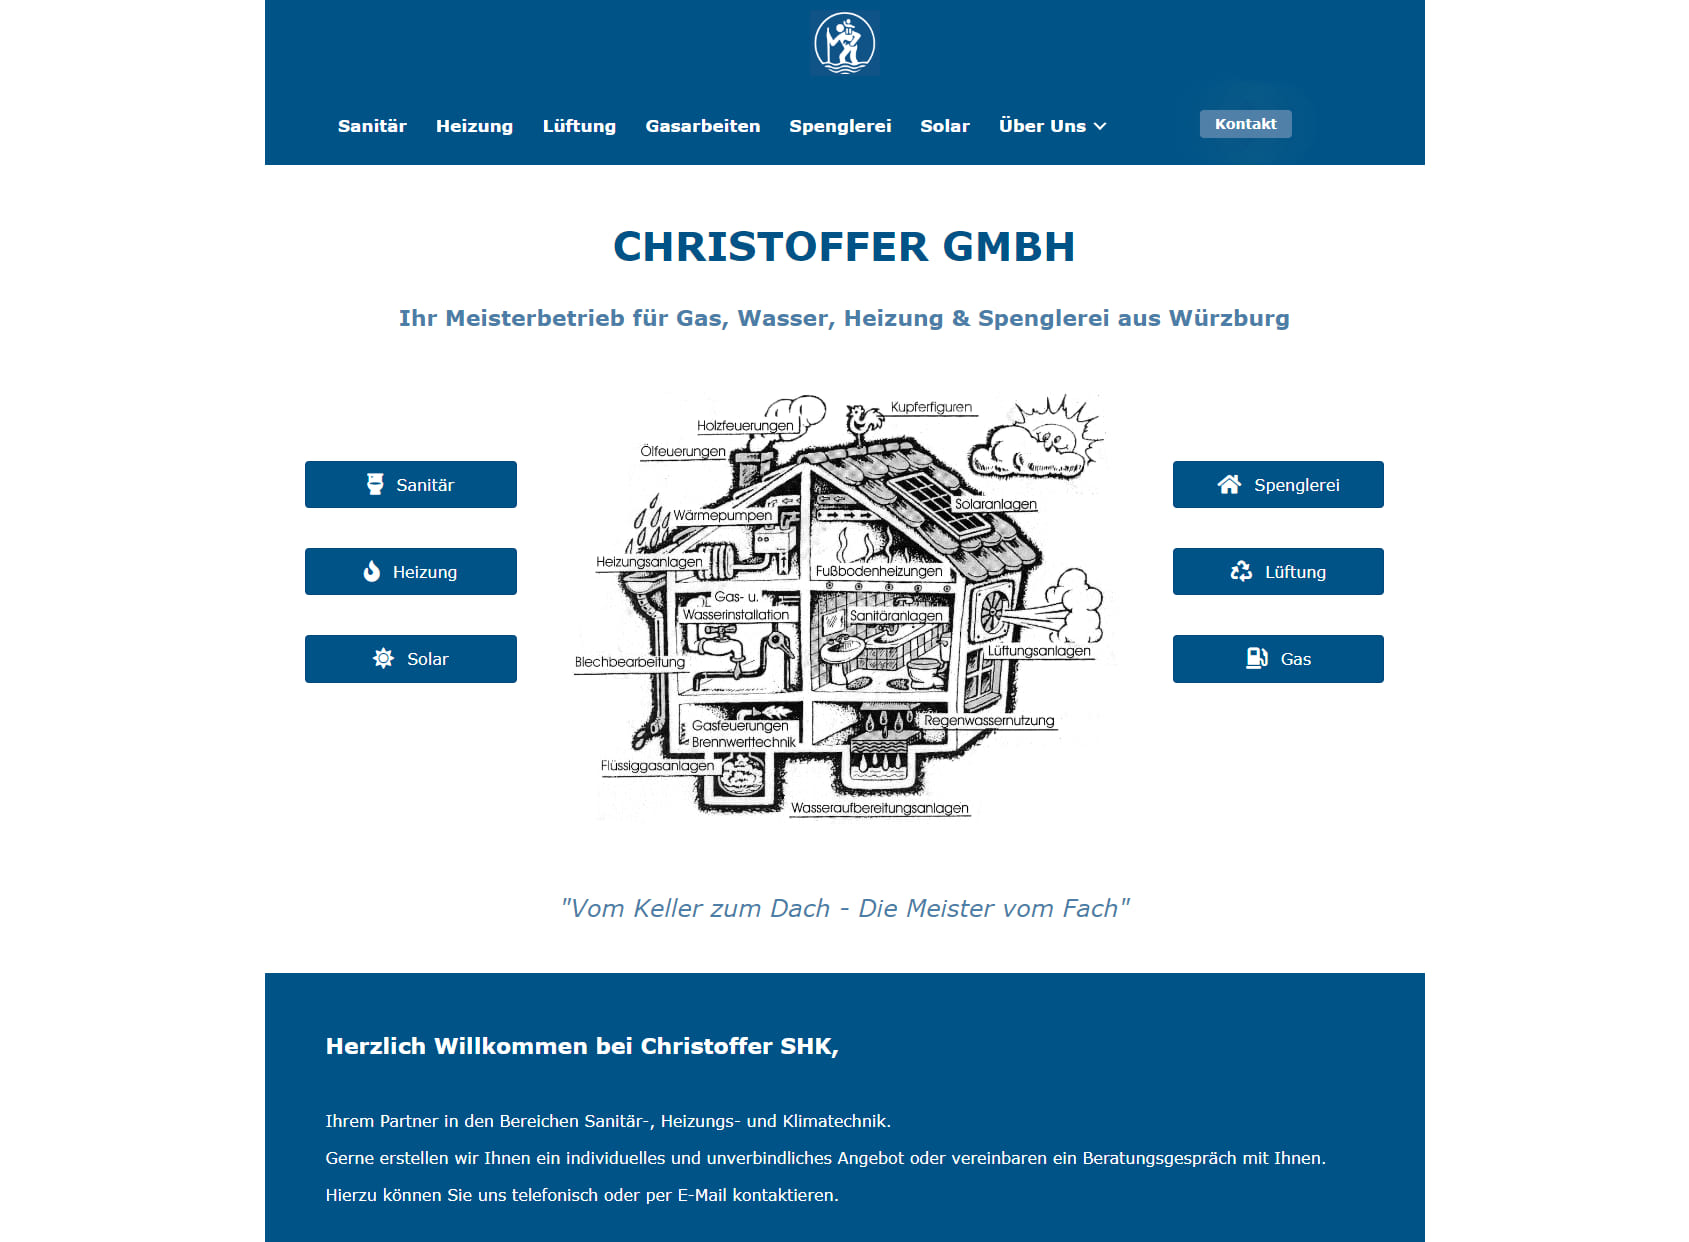 Christoffer GmbH